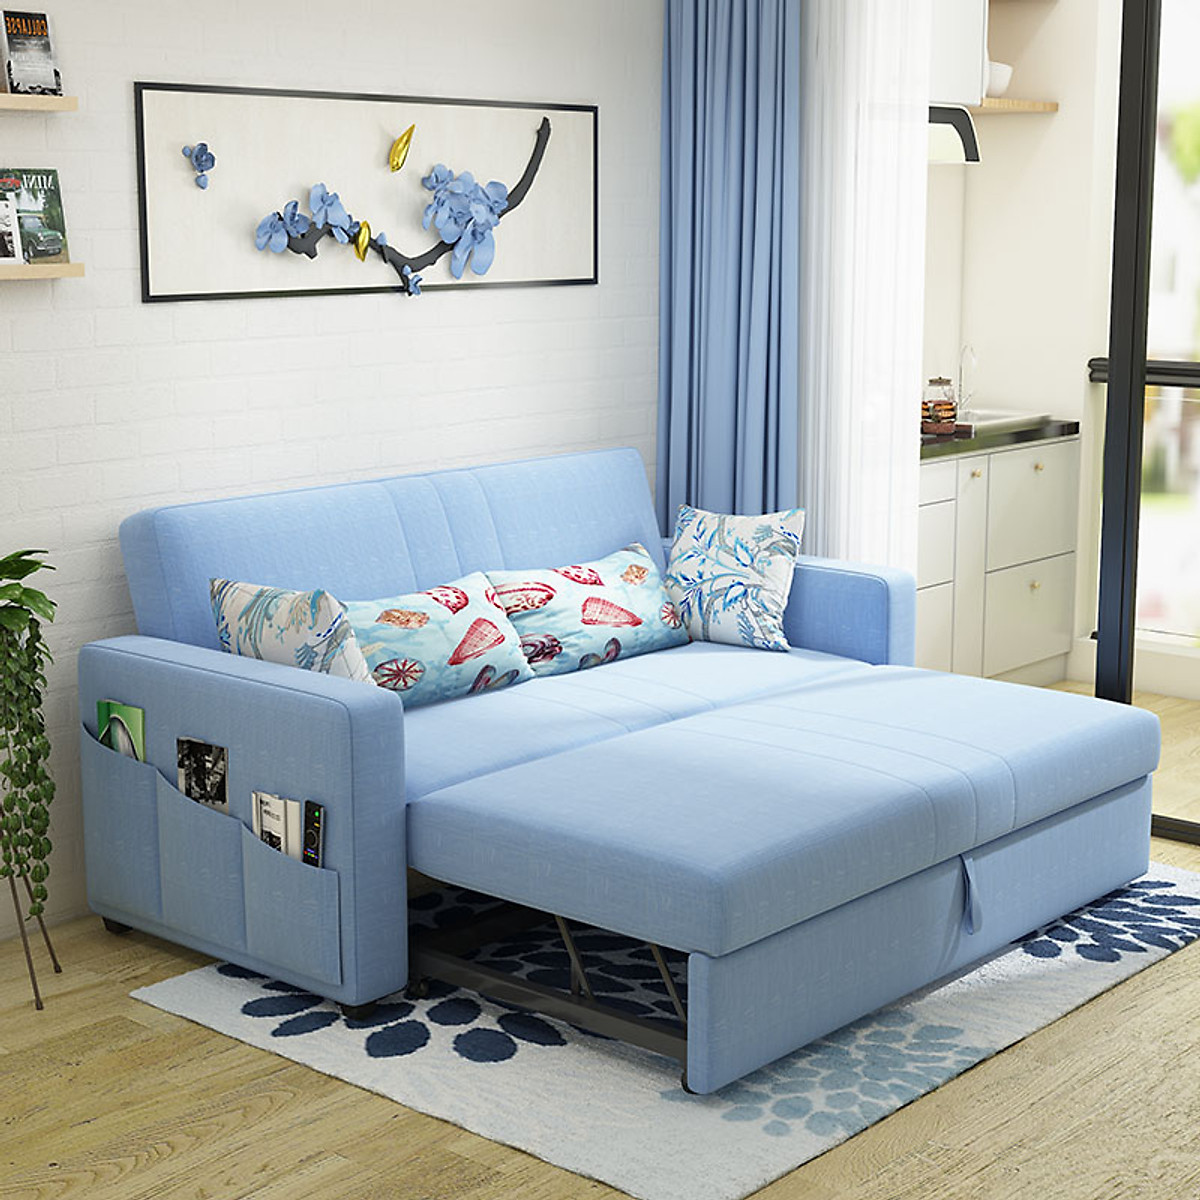 Sofa giường kéo Tundo đa năng hiện đại màu xanh ngọc